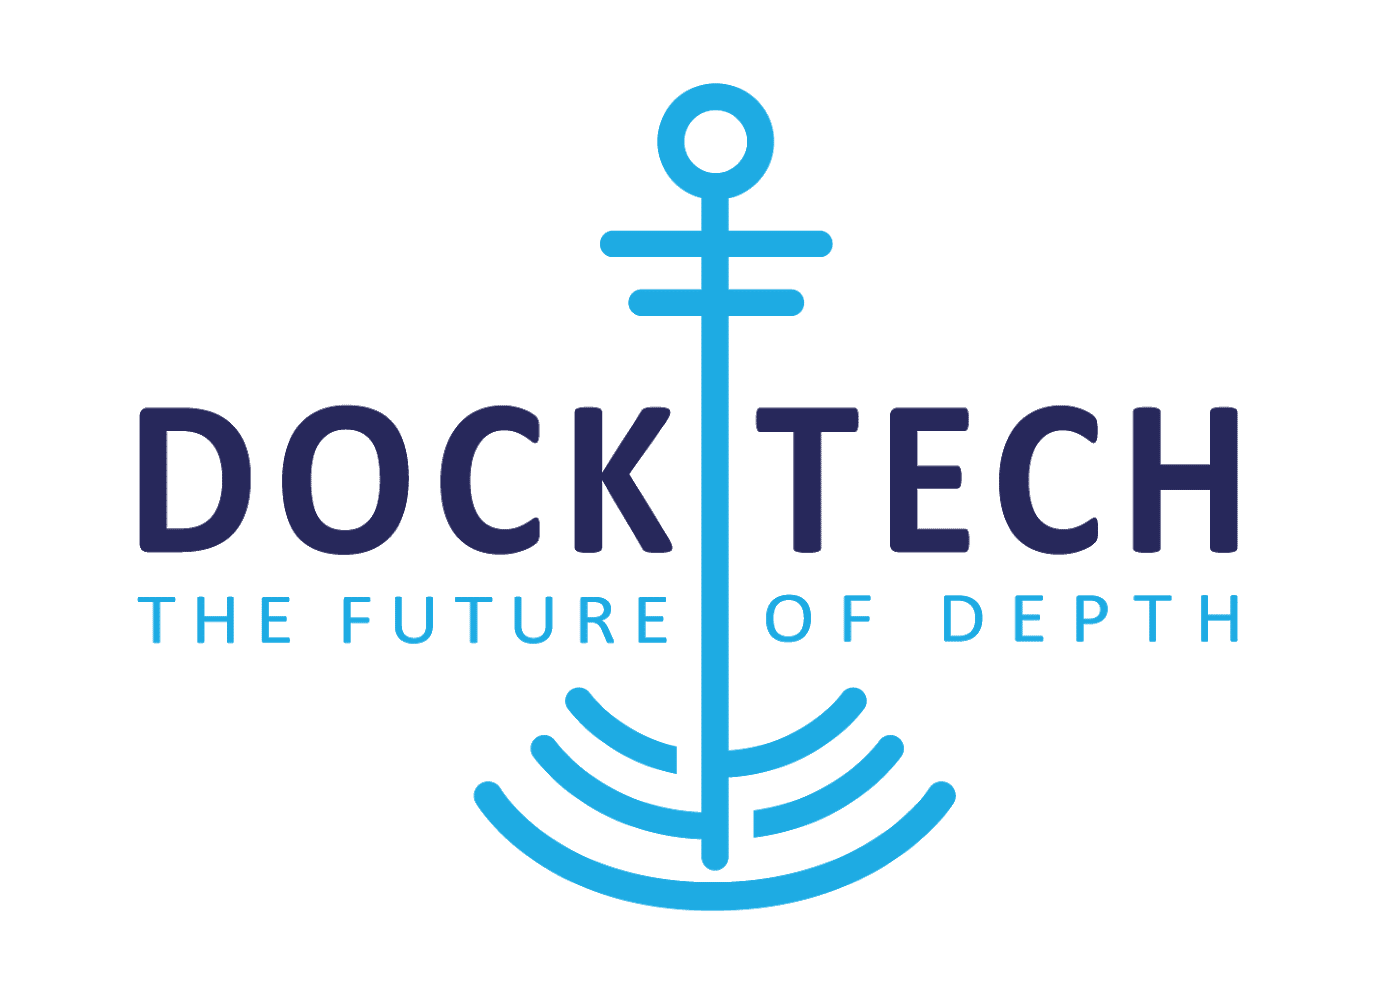 DockTech